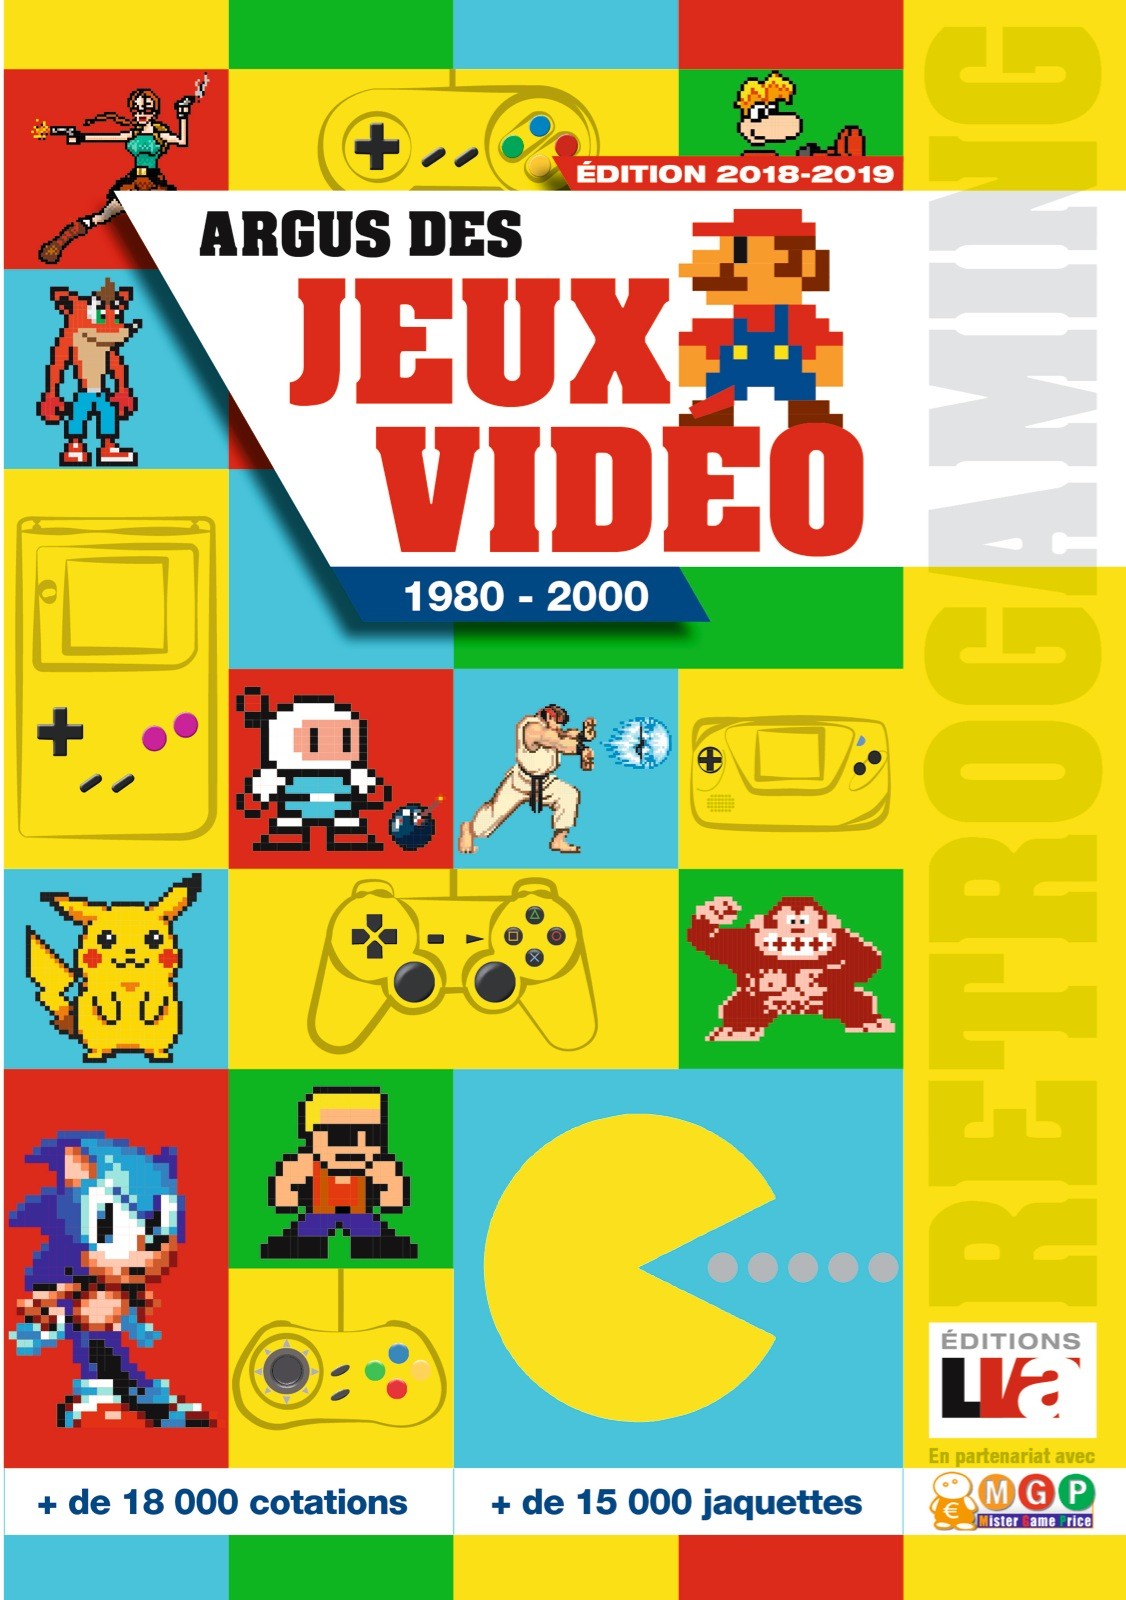 Argus des jeux vidéo 1980-2000 Edition 2018-2019